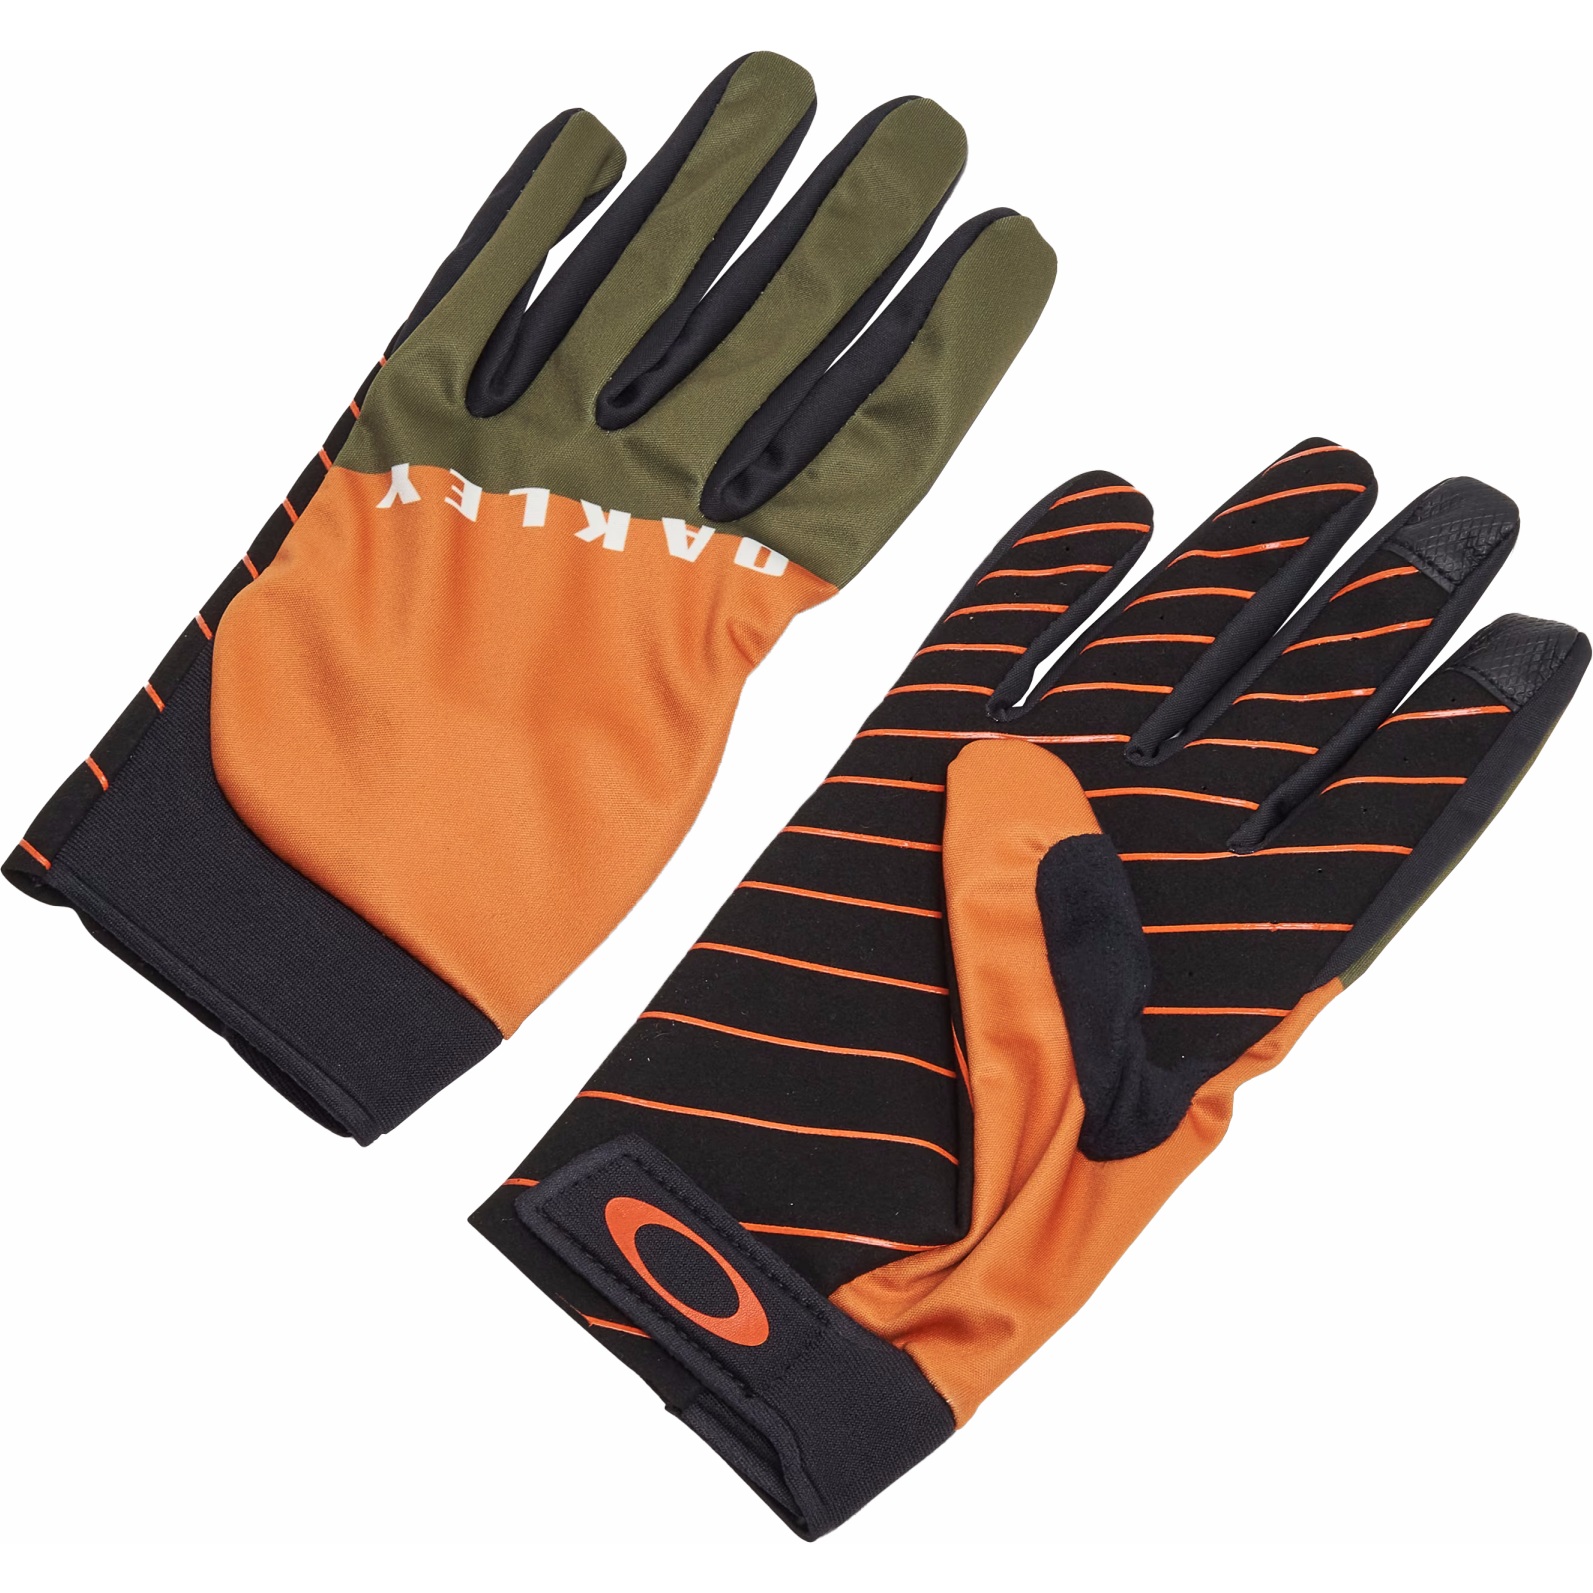 Productfoto van Oakley Icon Classic Road Handschoenen - New Dark Brush/Oranje